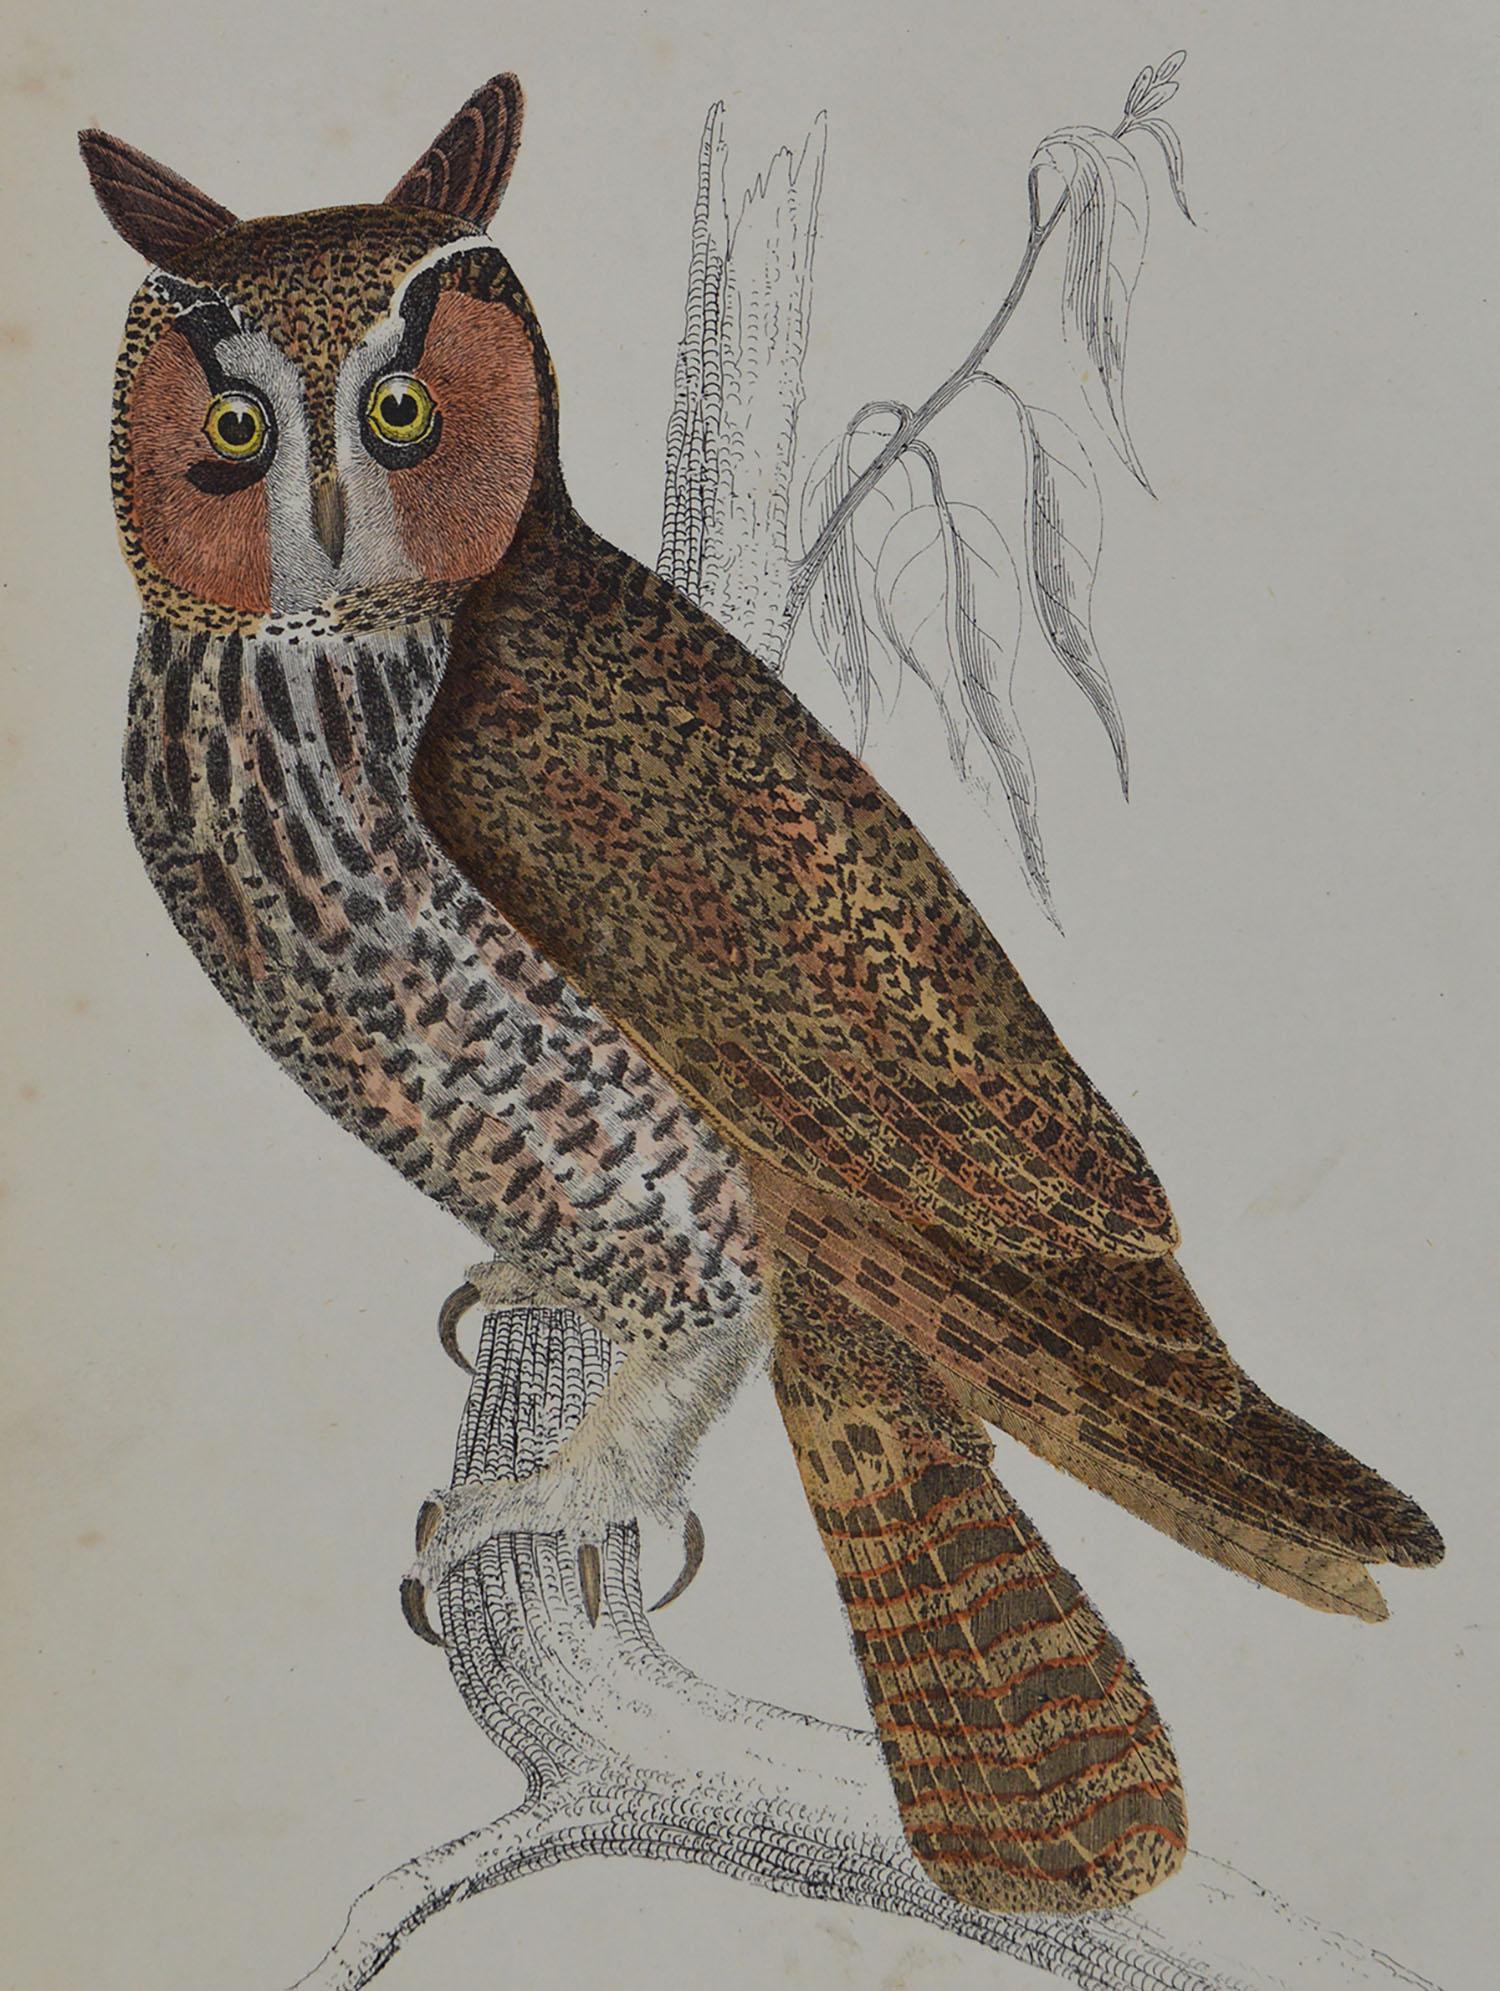 Folk Art Original Antique Print of an Owl, 1847 'Unframed'